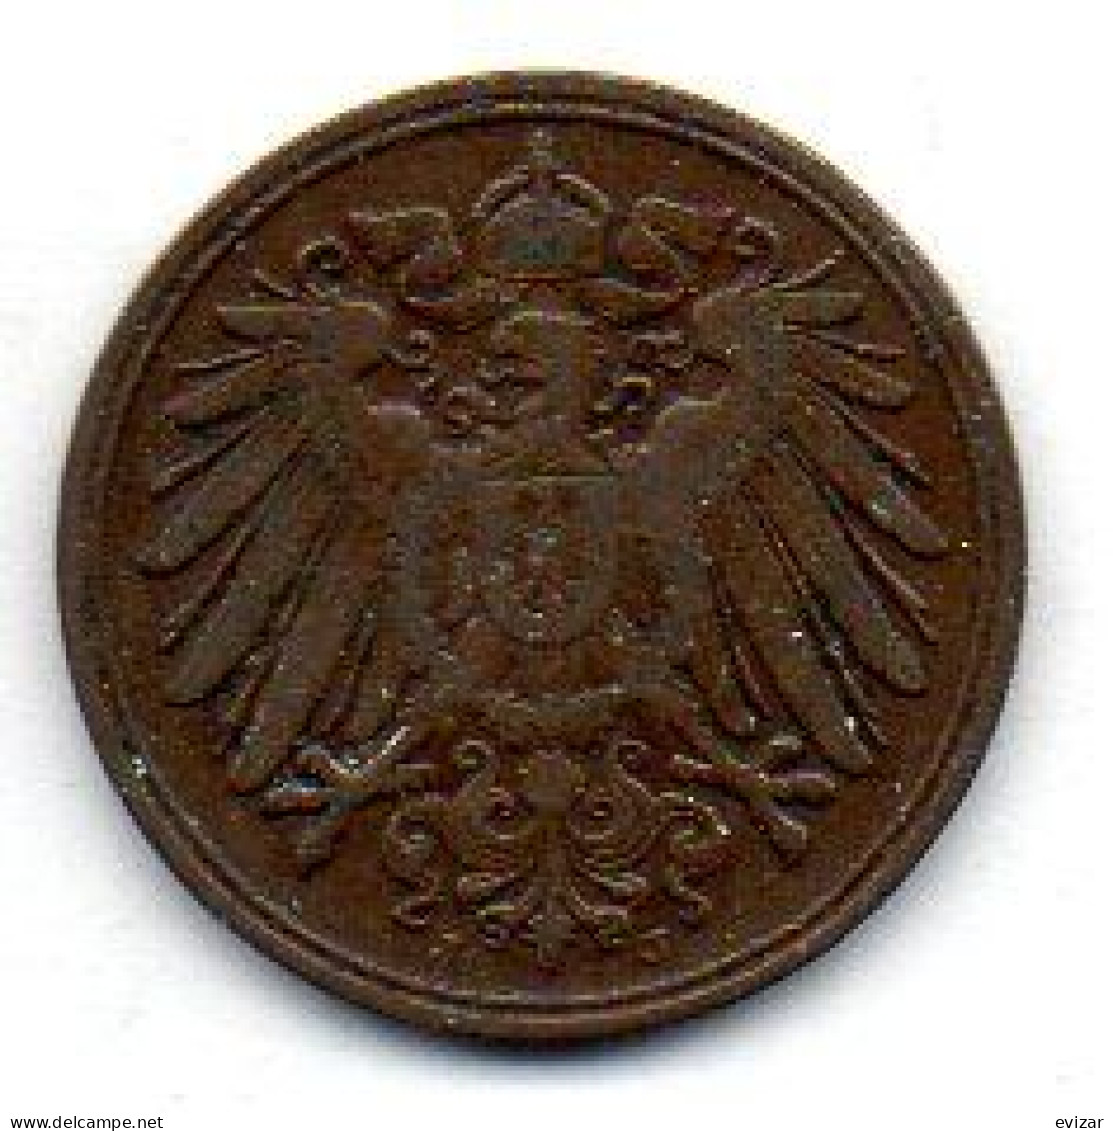 GERMANY - EMPIRE, 1 Pfennig, Copper, Year 1911-J, KM # 10 - 1 Pfennig